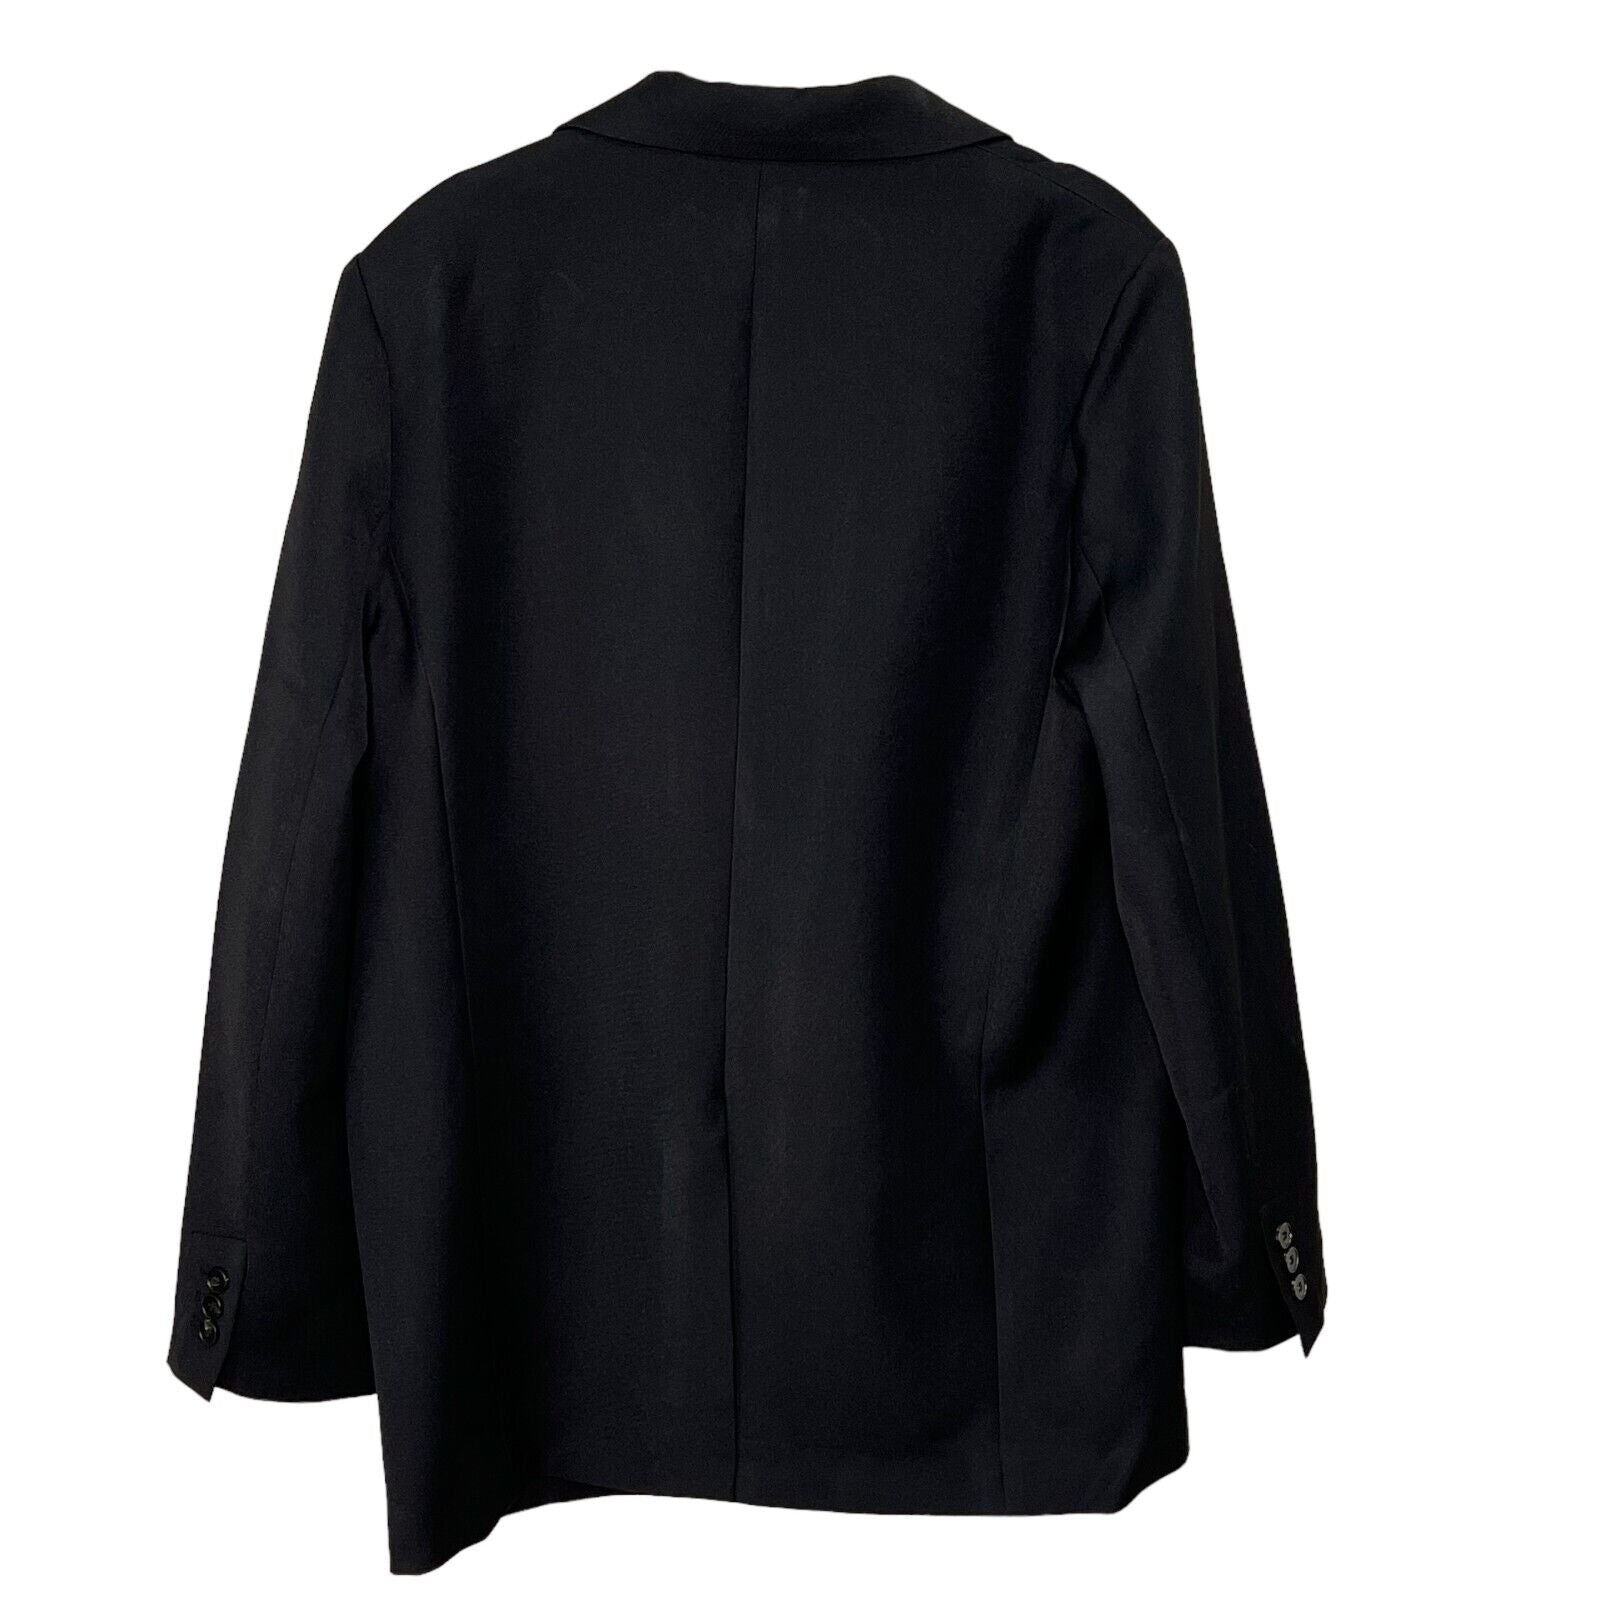 o.p.t Black Larsen Oversized Blazer Jacket Size Large $220